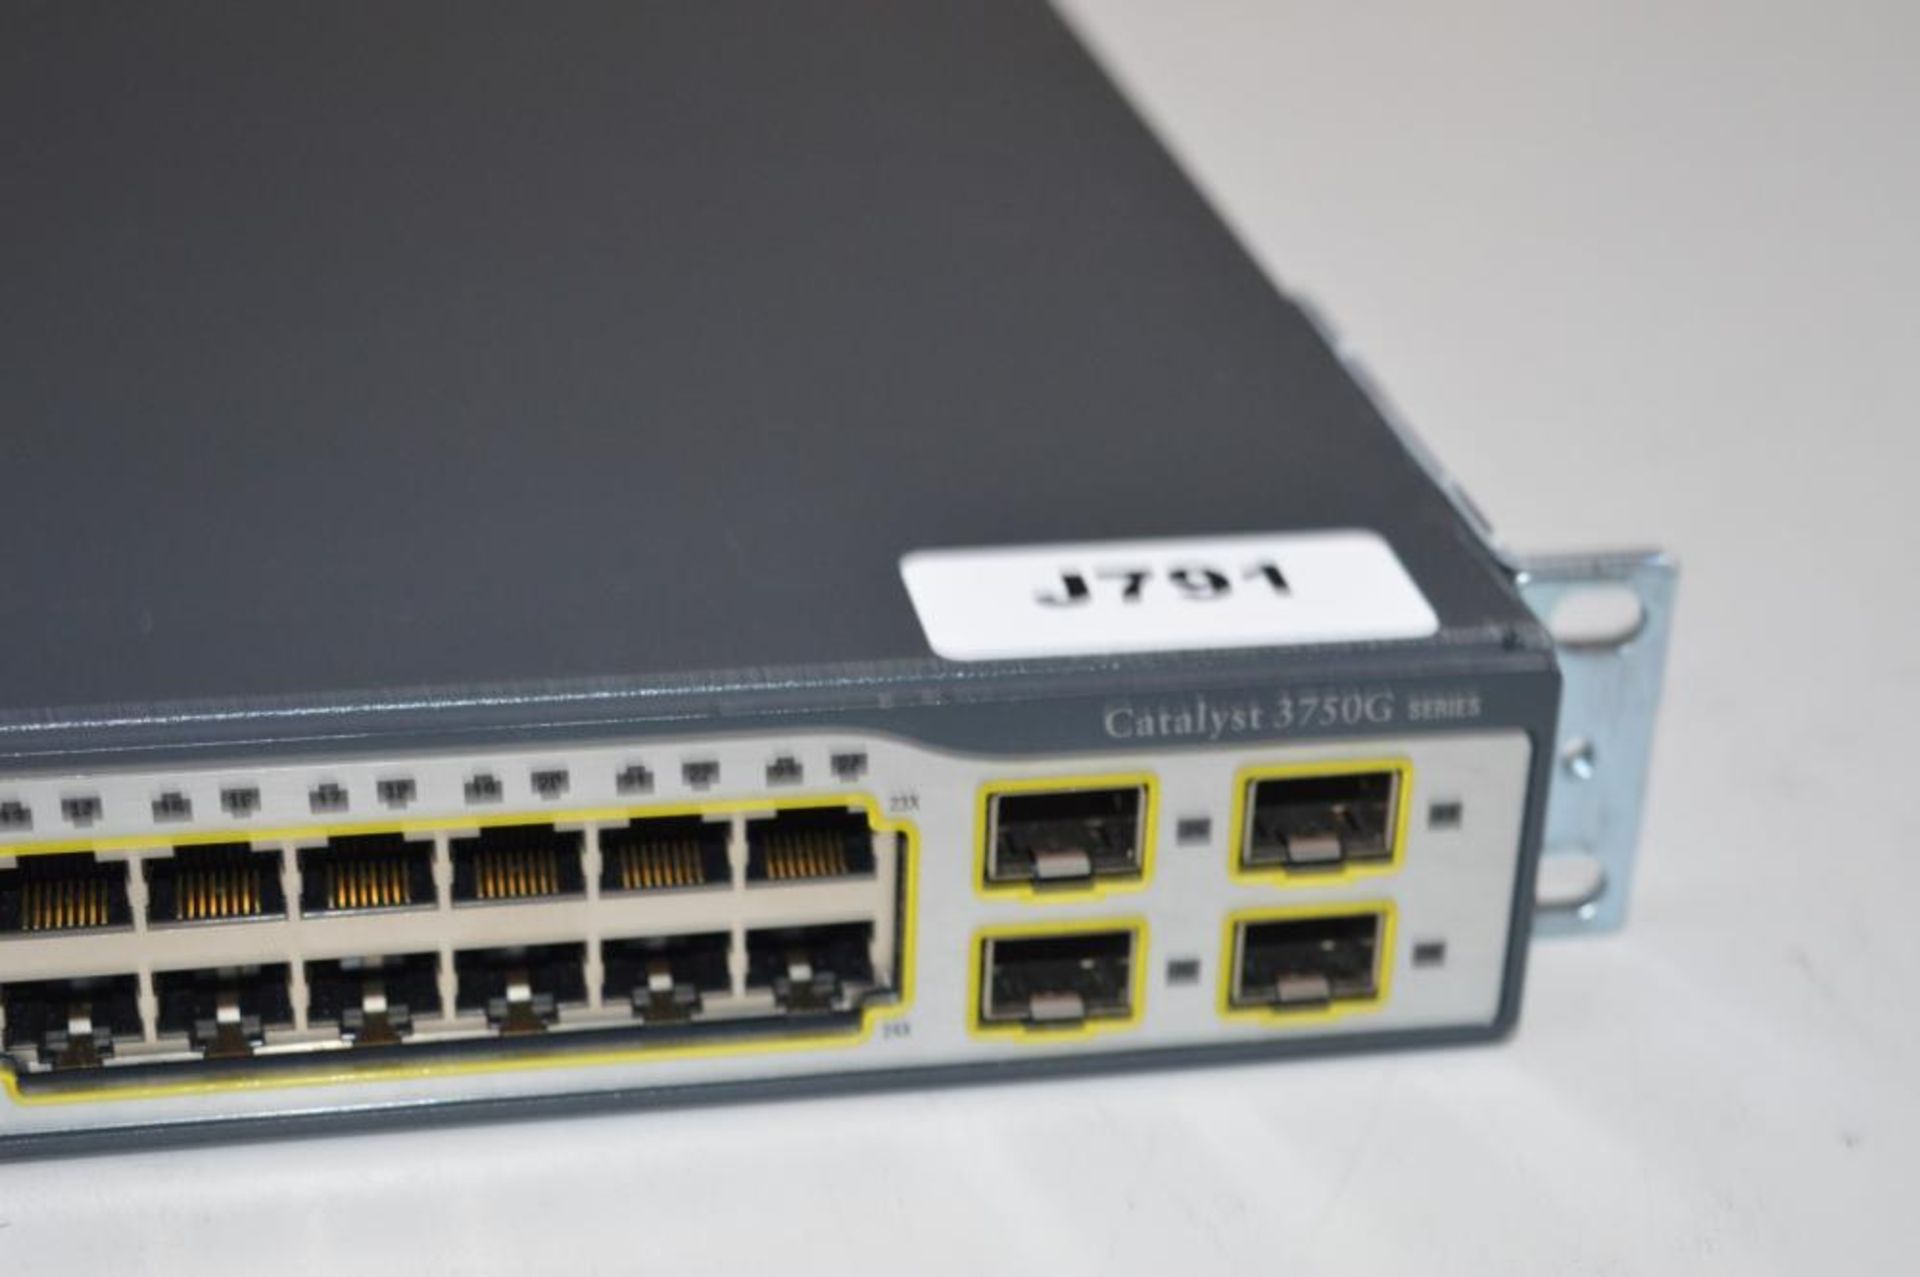 1 x Cisco Catalyst 3750G Series WS-C3750G-24TS Network Switch - CL285 - Ref J791 - Location: Altrinc - Bild 3 aus 5